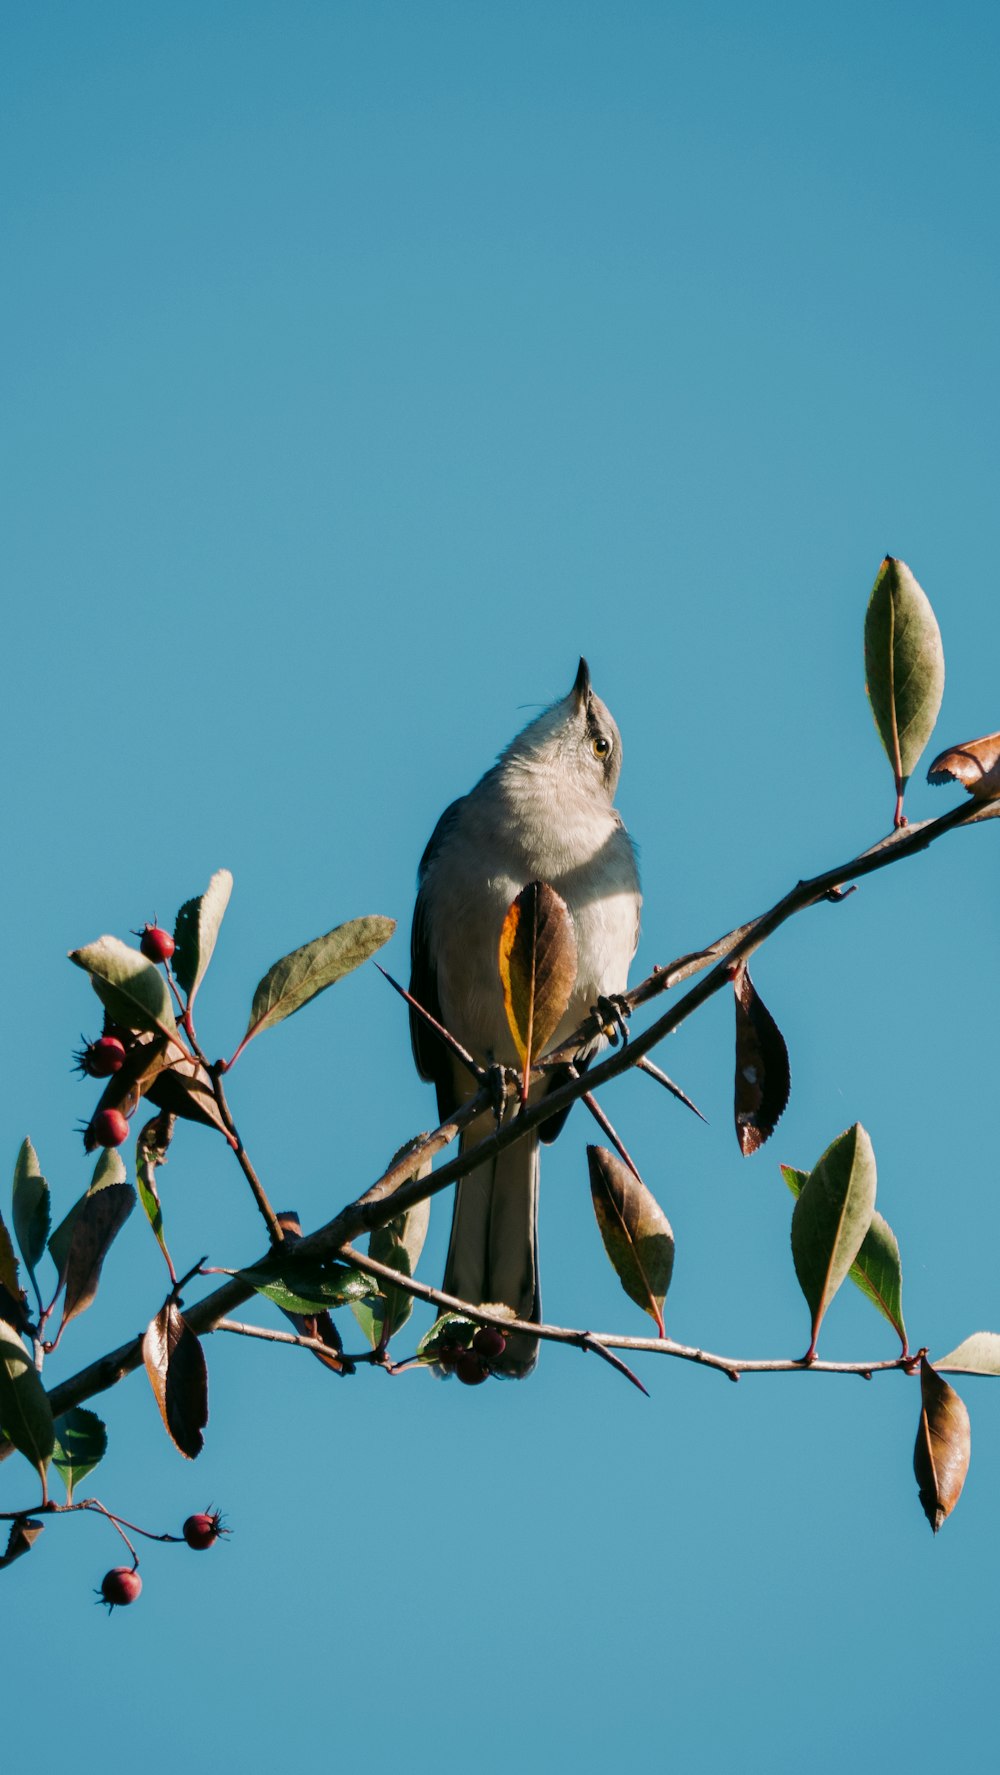 昼間の木の枝にとまる灰色と白の鳥